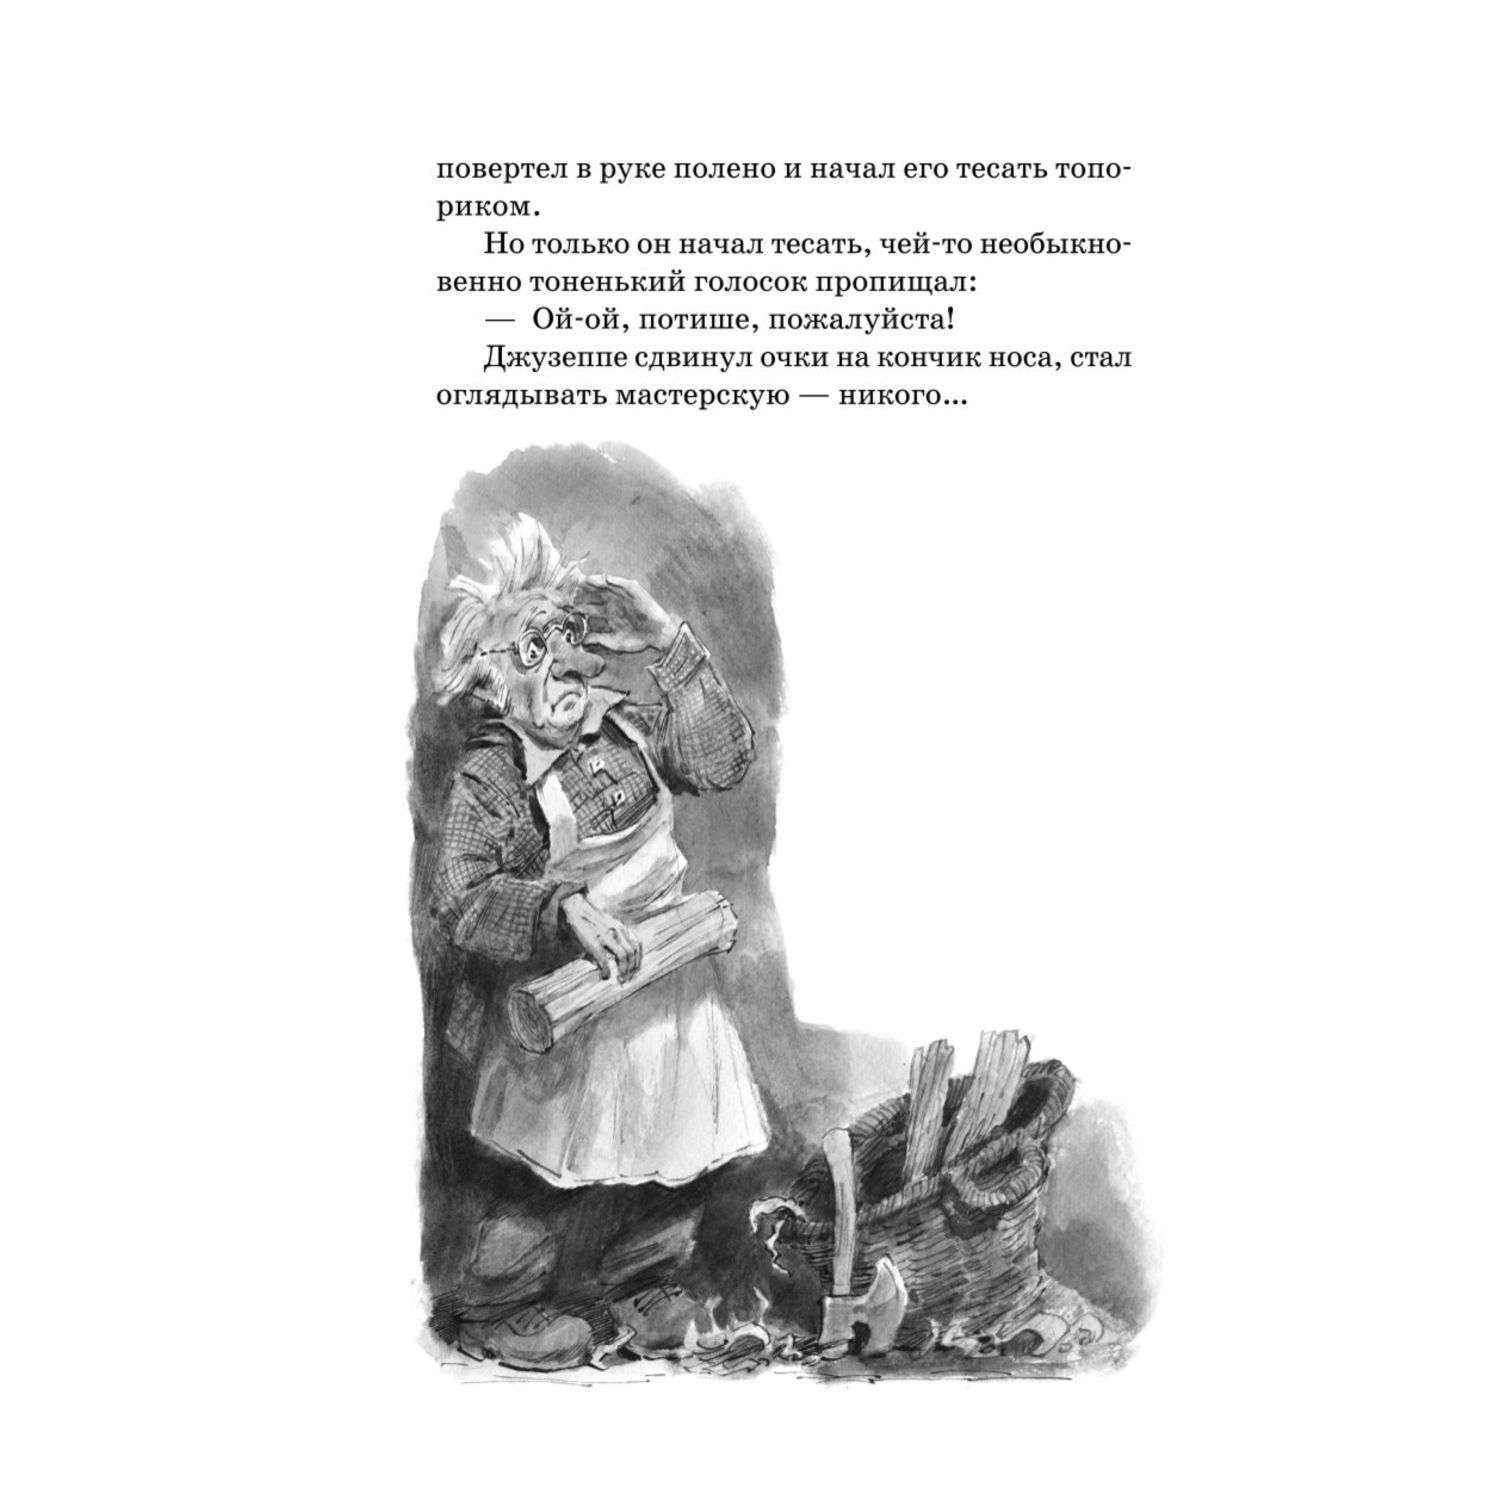 Книга Золотой ключик или Приключения Буратино иллюстрации Челака - фото 3